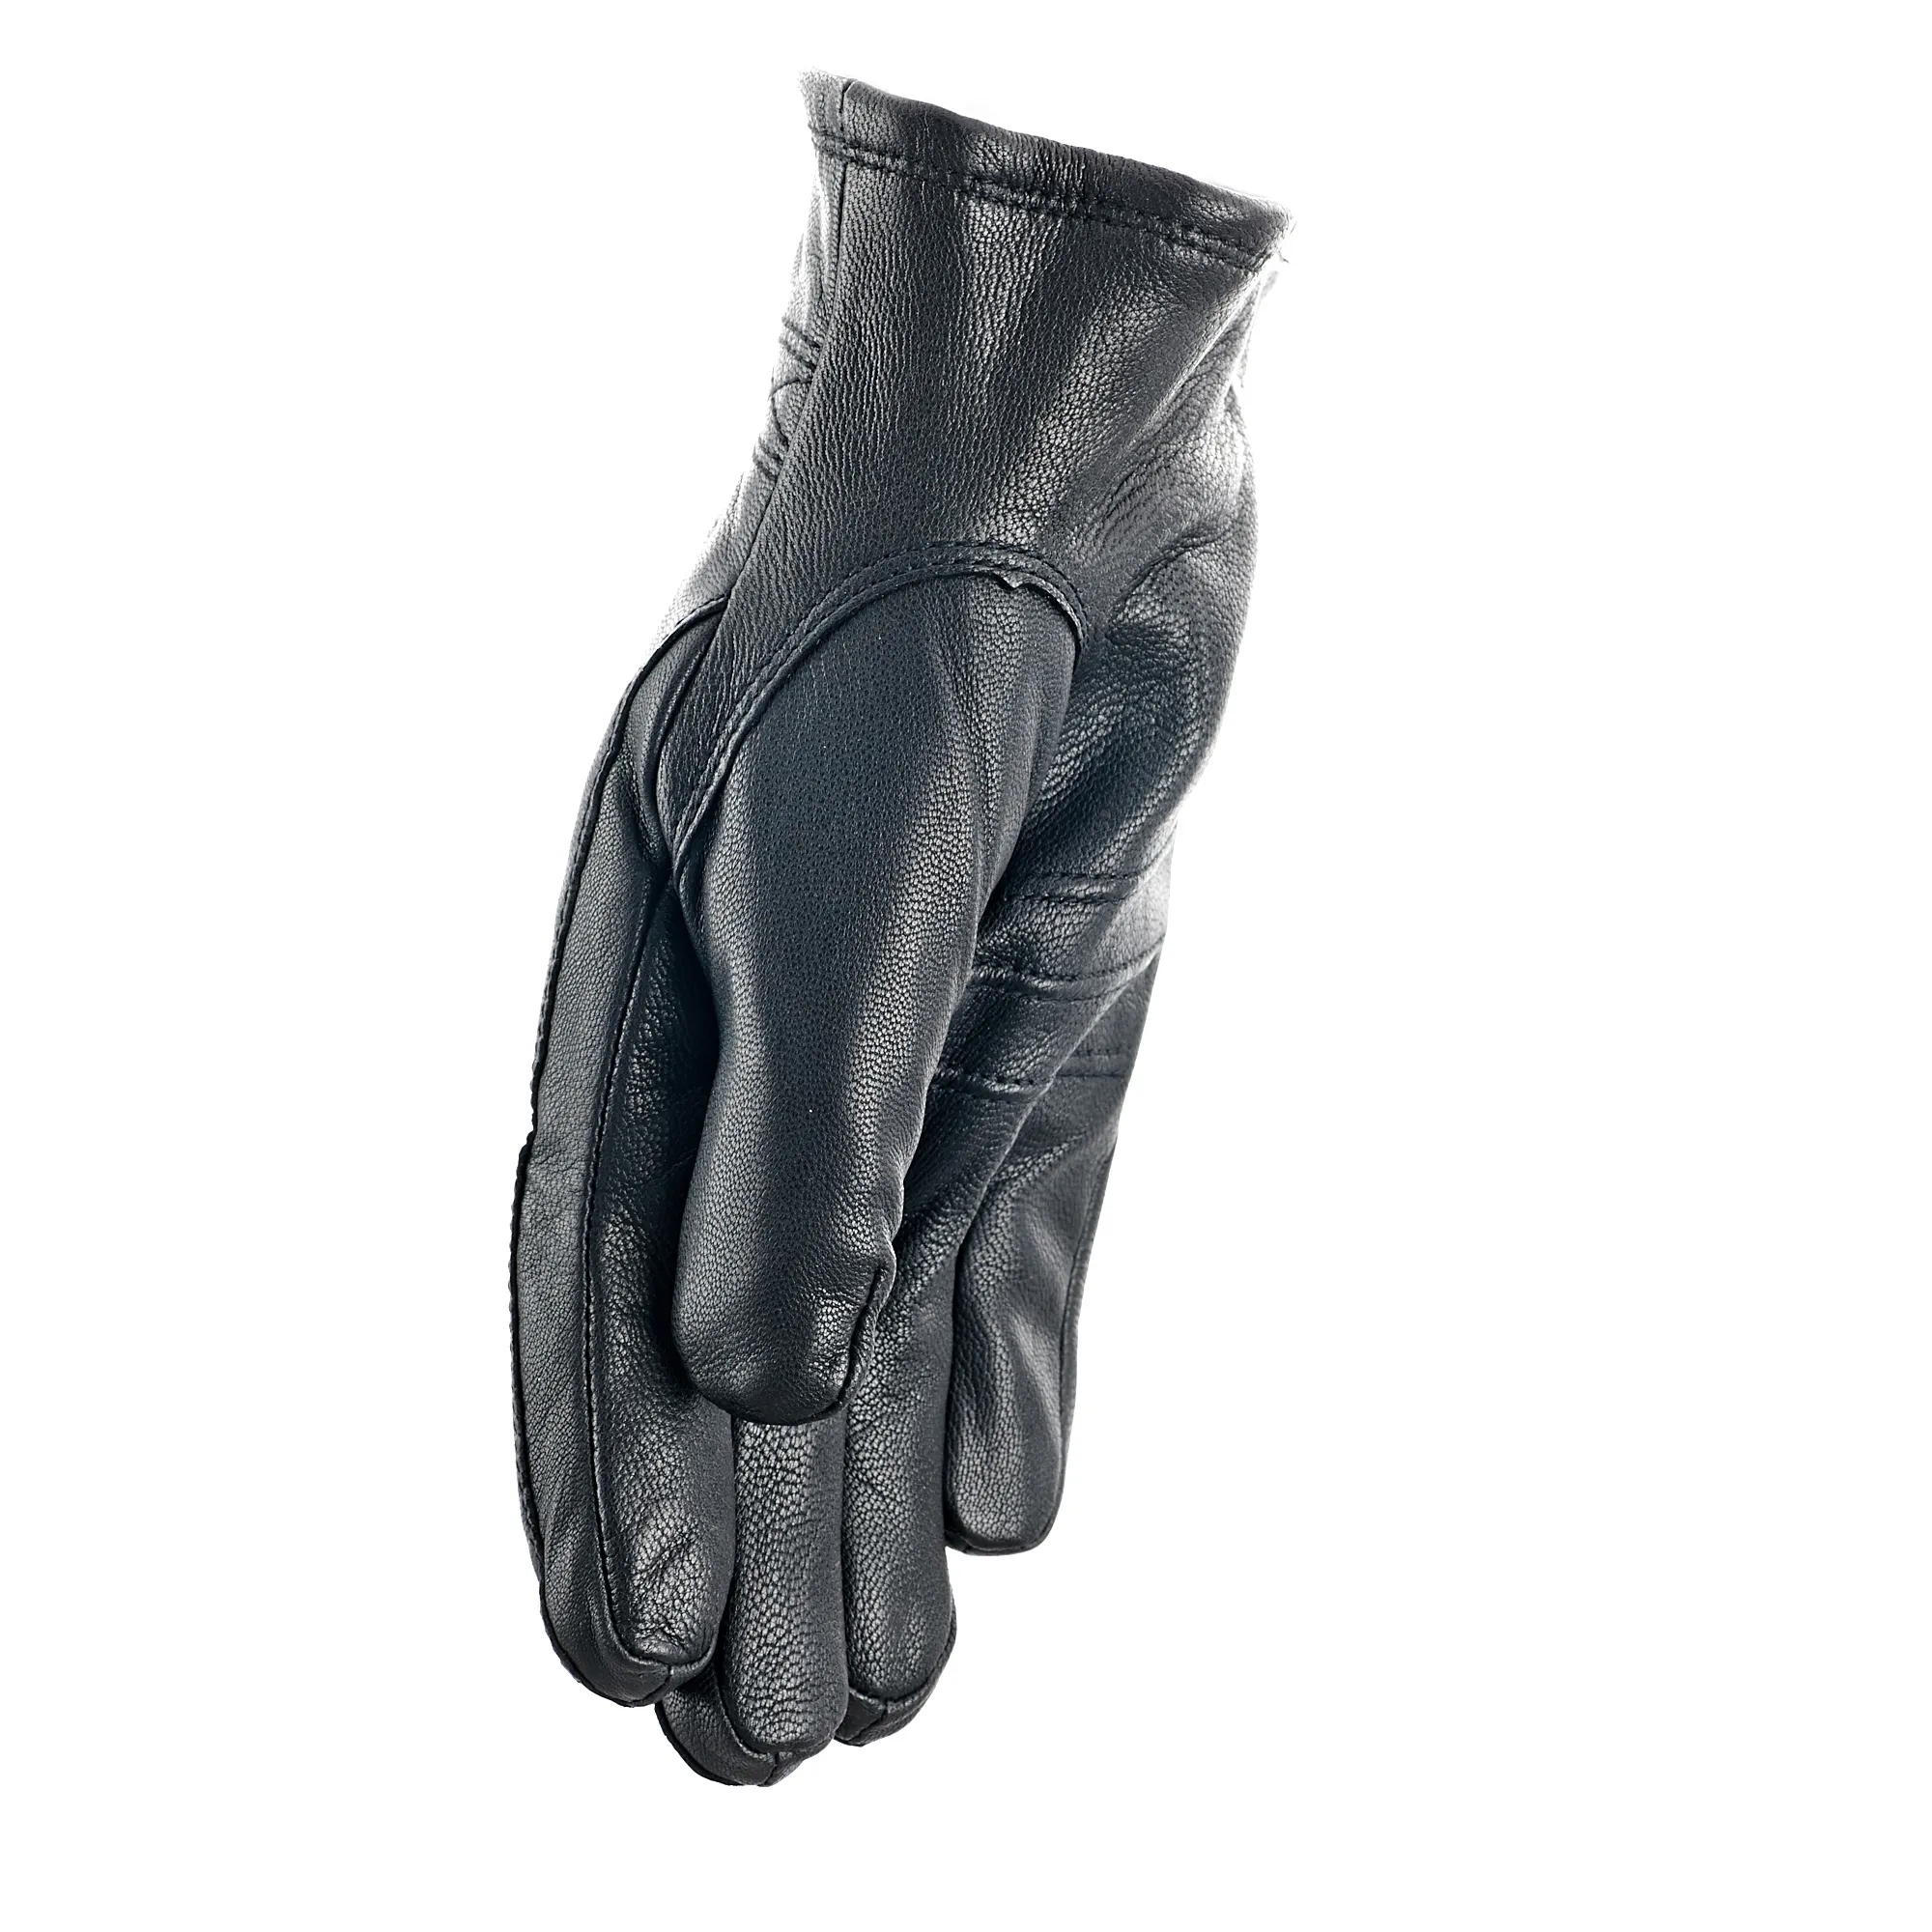 Gaucho handsker | Køb lækre handsker online | 1-3 levering